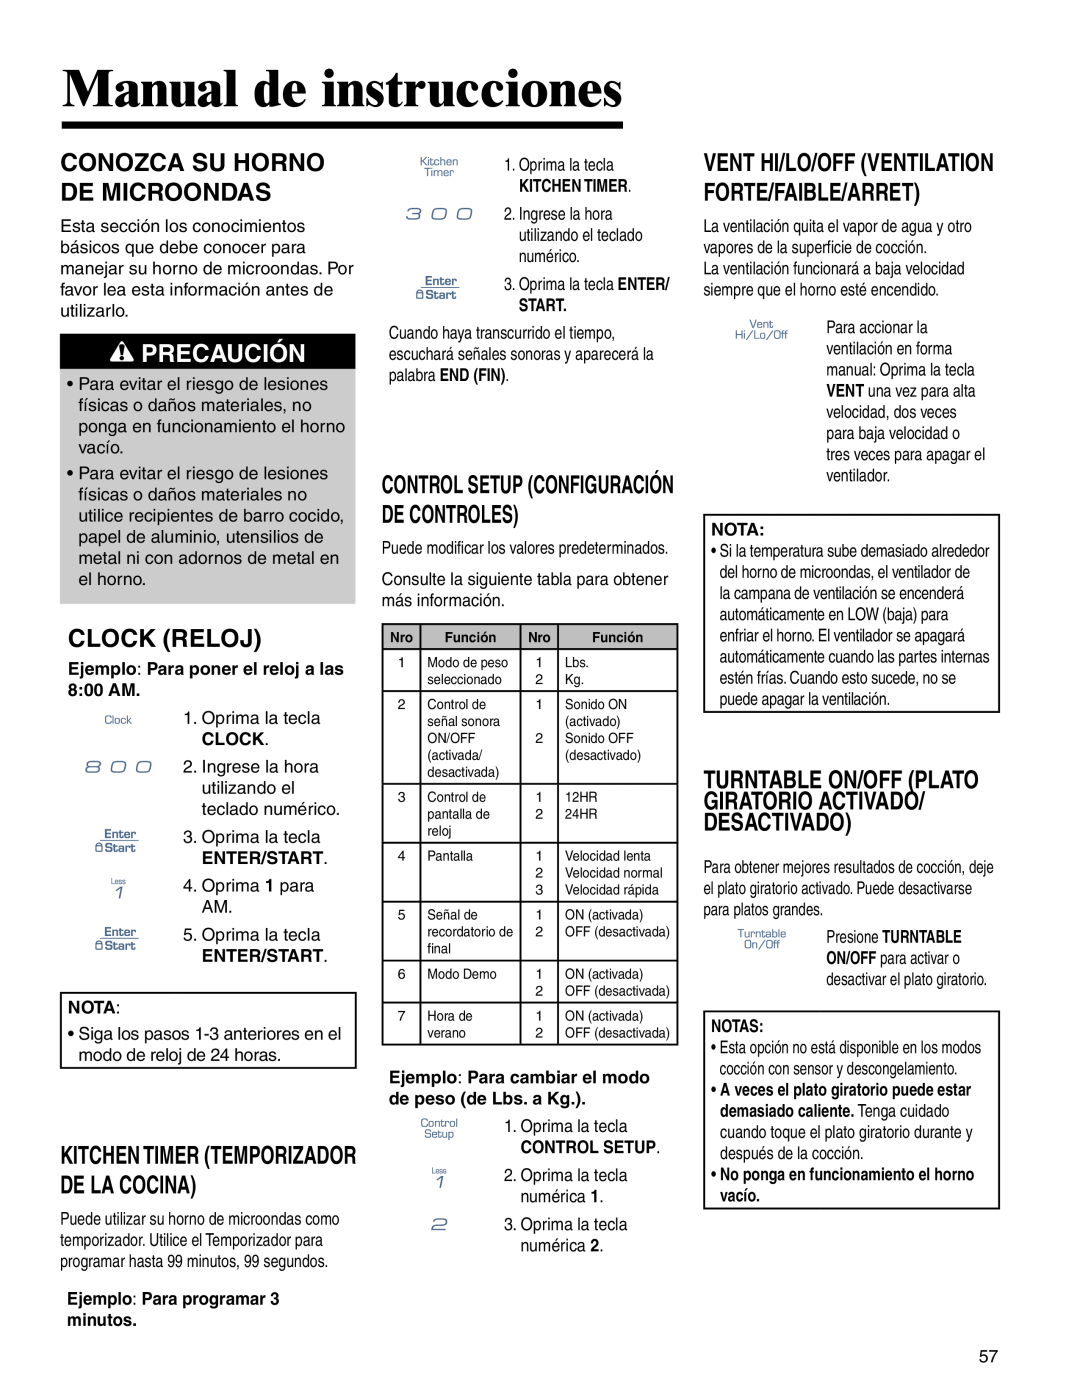 Amana AMV5164BA/BC Manual de instrucciones, Conozca Su Horno De Microondas, Clock Reloj, Precaución 